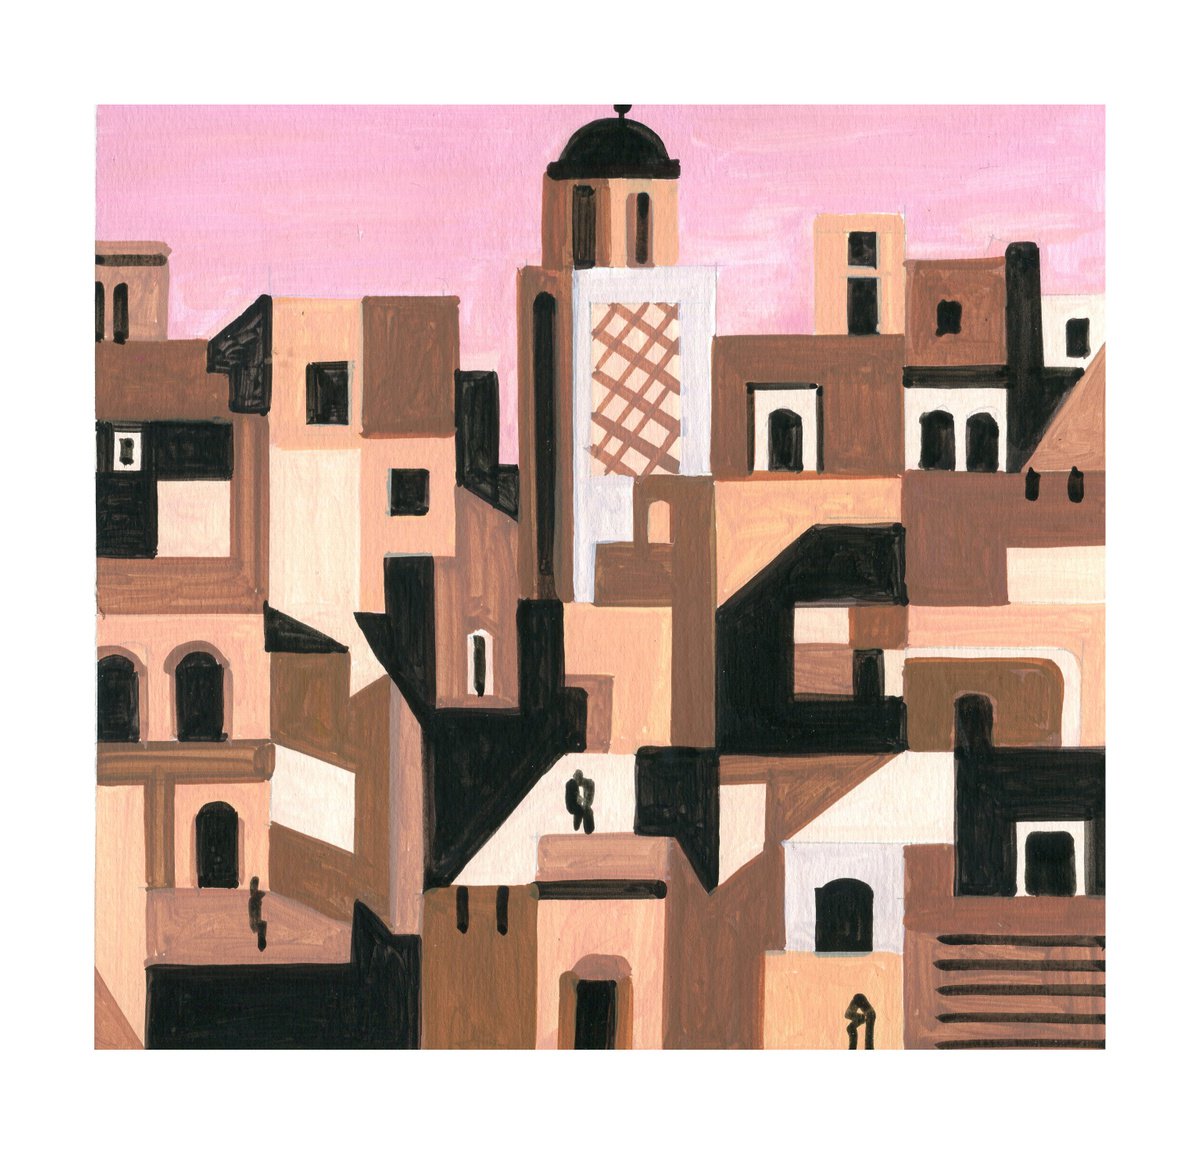 Marrakesh-08 by Andr Baldet